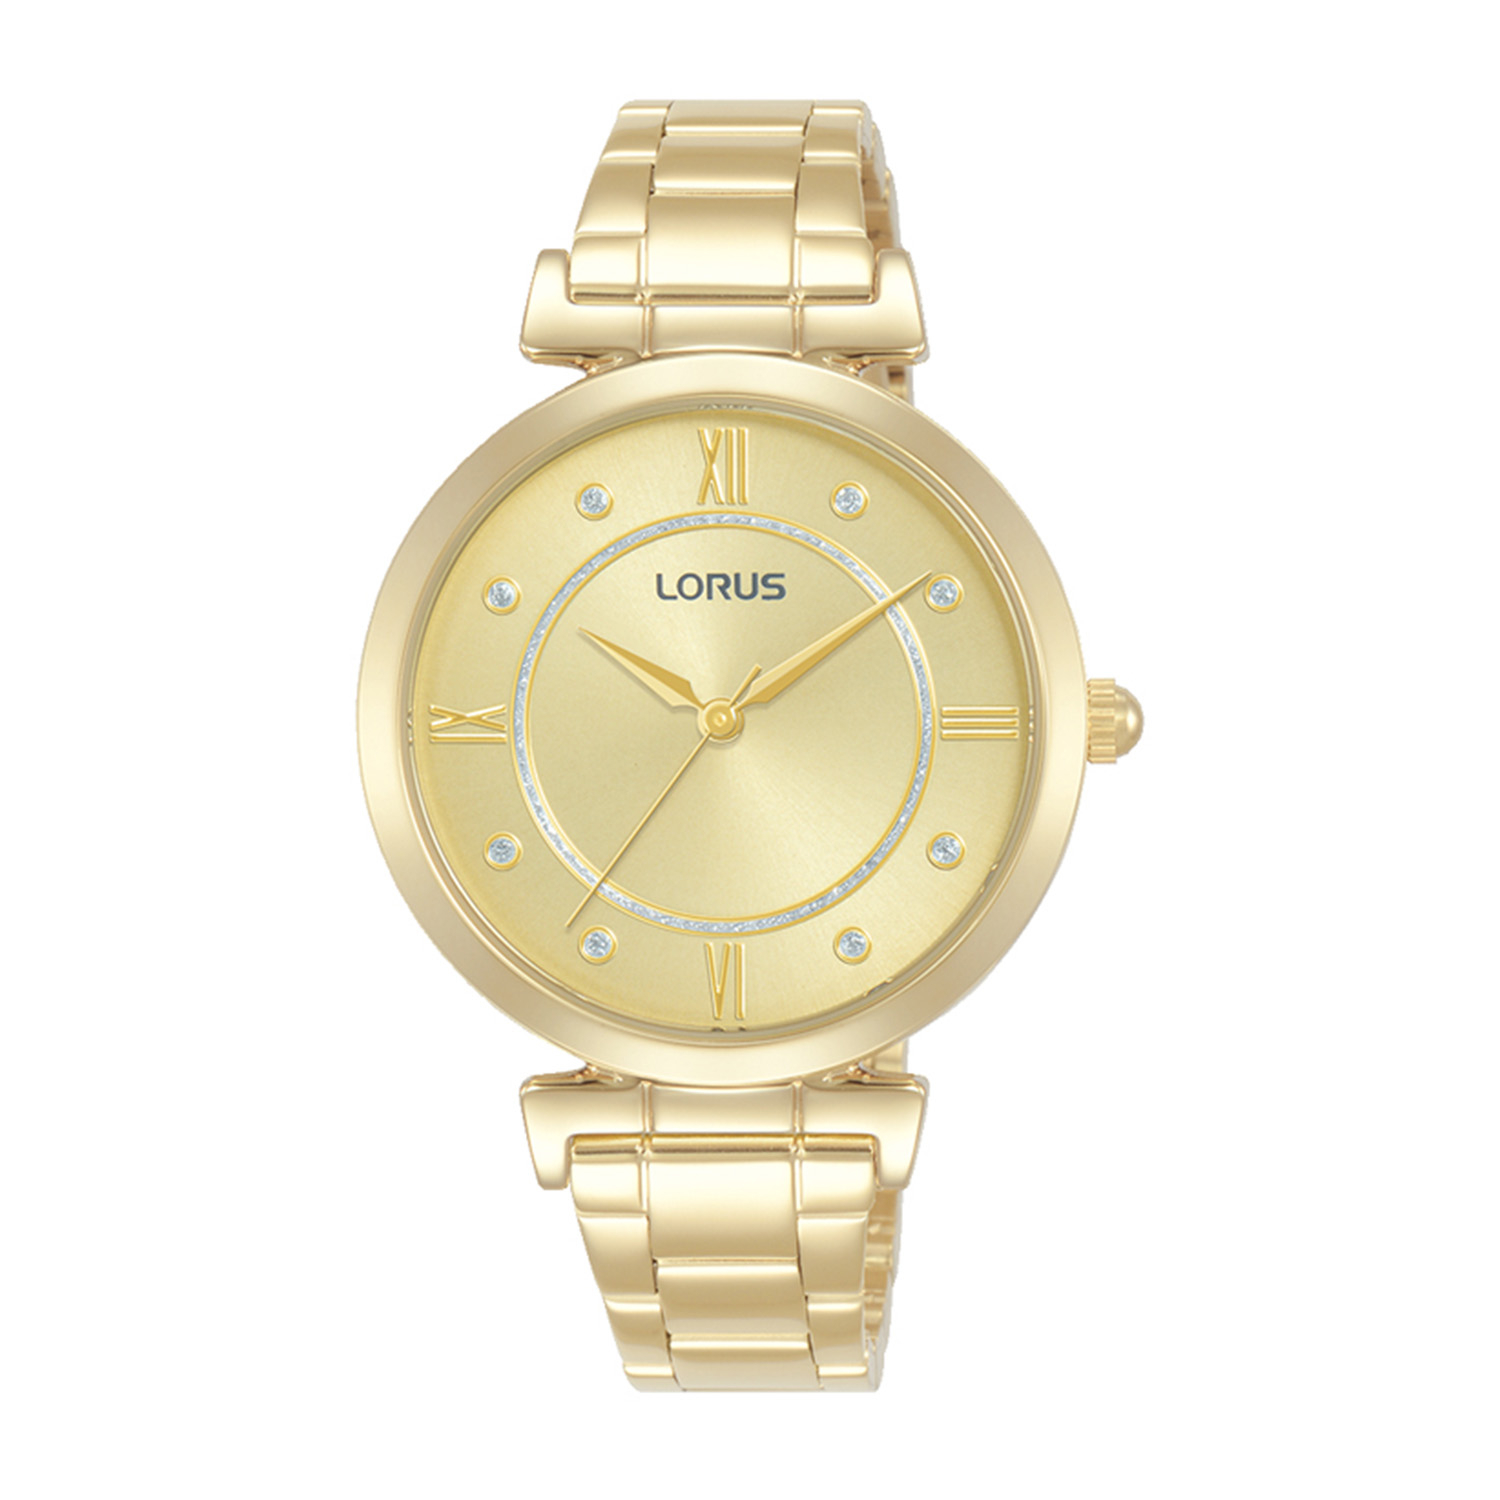 Γυναικείο ρολόι LORUS από χρυσό ανοξείδωτο ατσάλι με χρυσό καντράν και μπρασελέ.